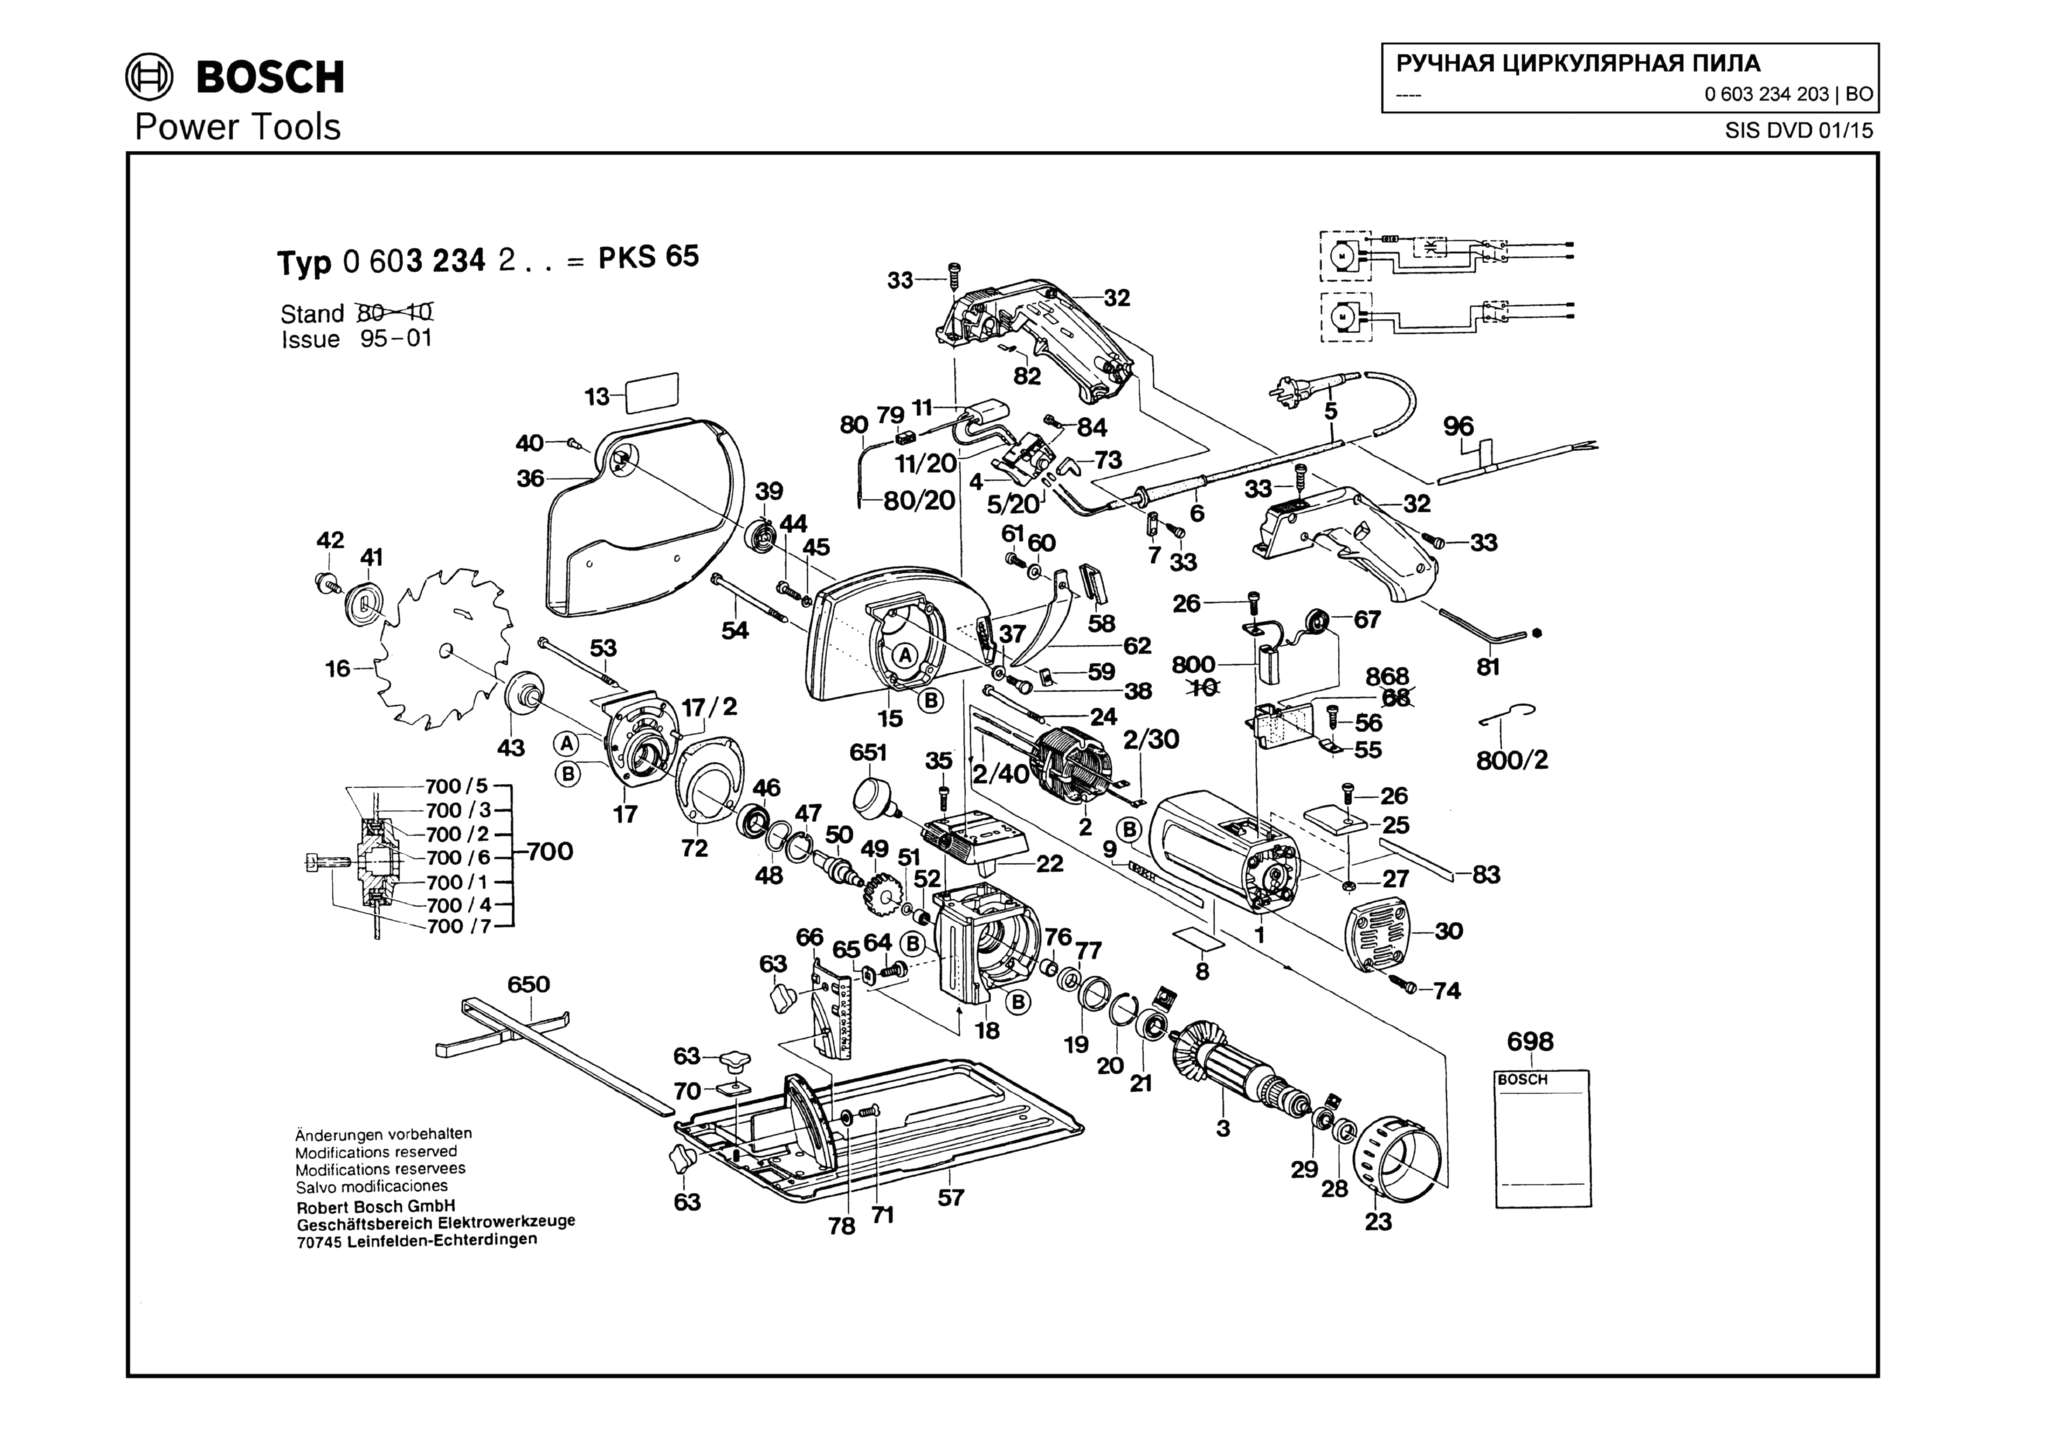 Запчасти, схема и деталировка Bosch PKS 65 (ТИП 0603234203)